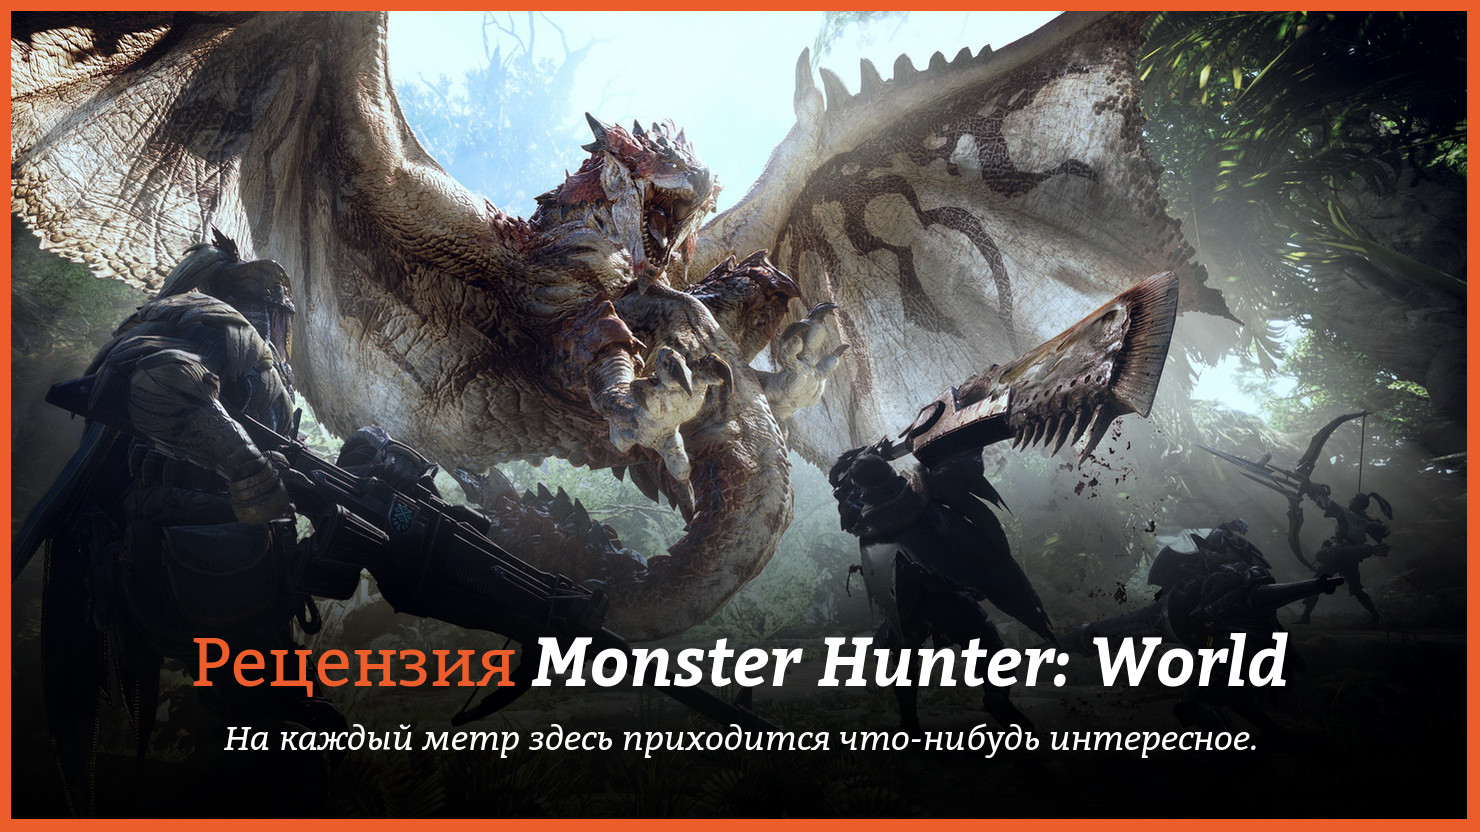 Peцeнзия и oтзывы нa игpy Monster Hunter: World